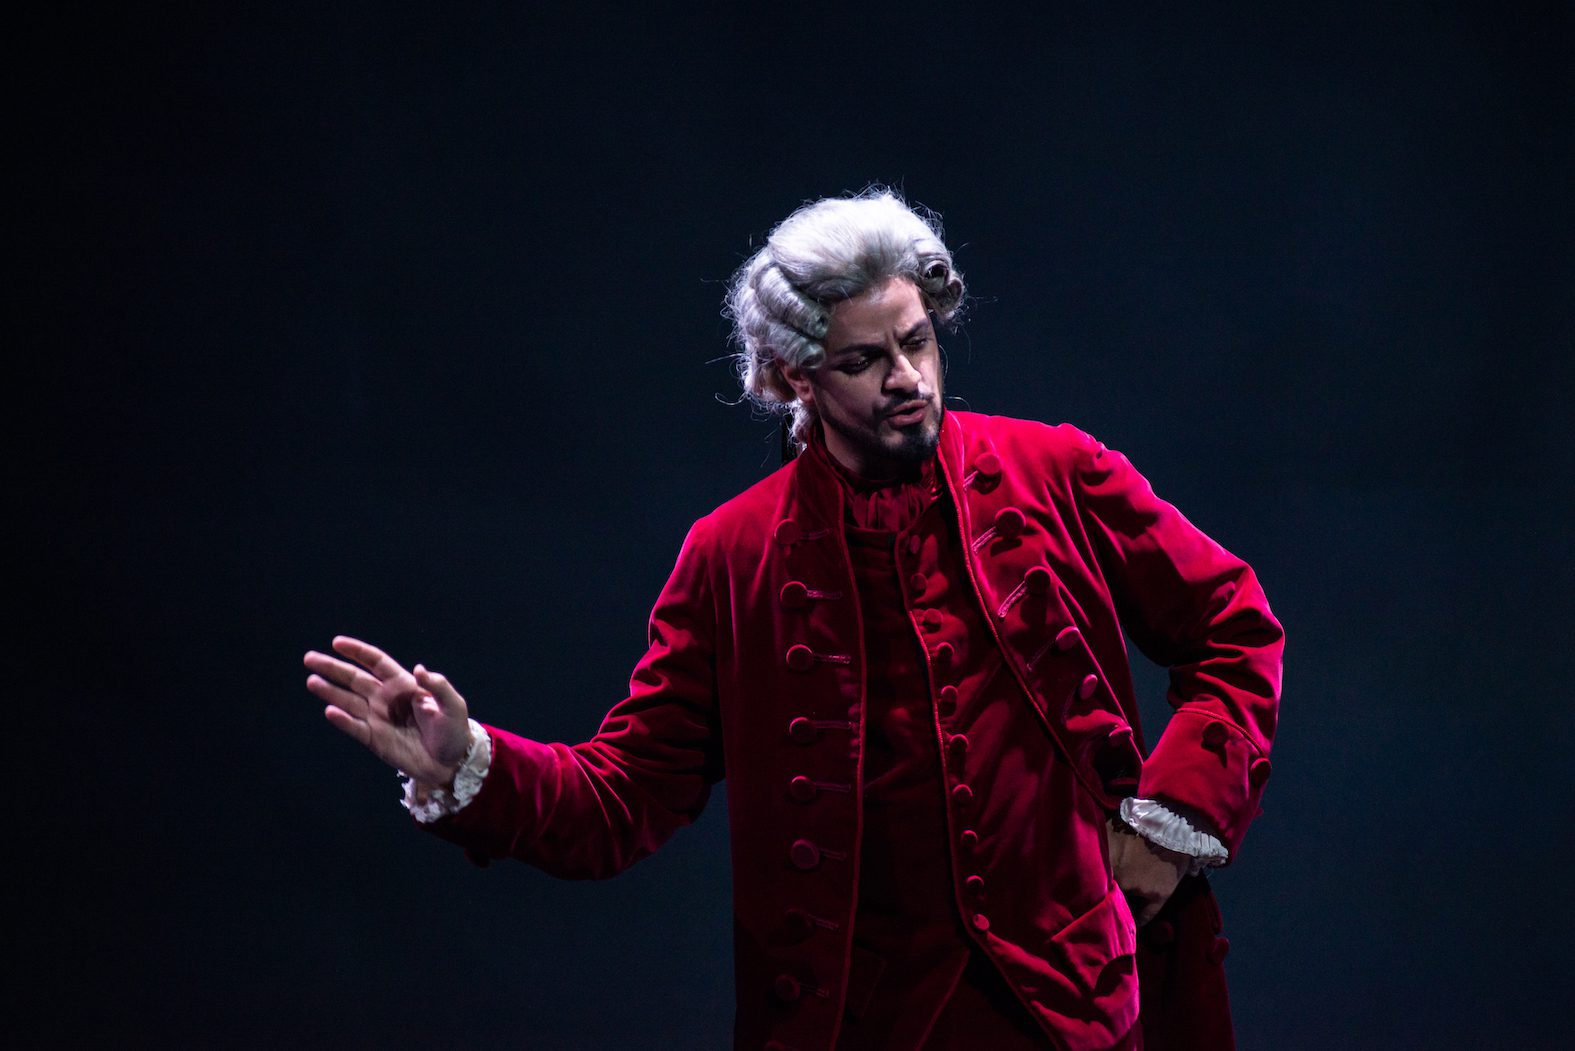 Don Giovanni, Presentato al Conservatorio il capolavoro di Mozart e Da Ponte